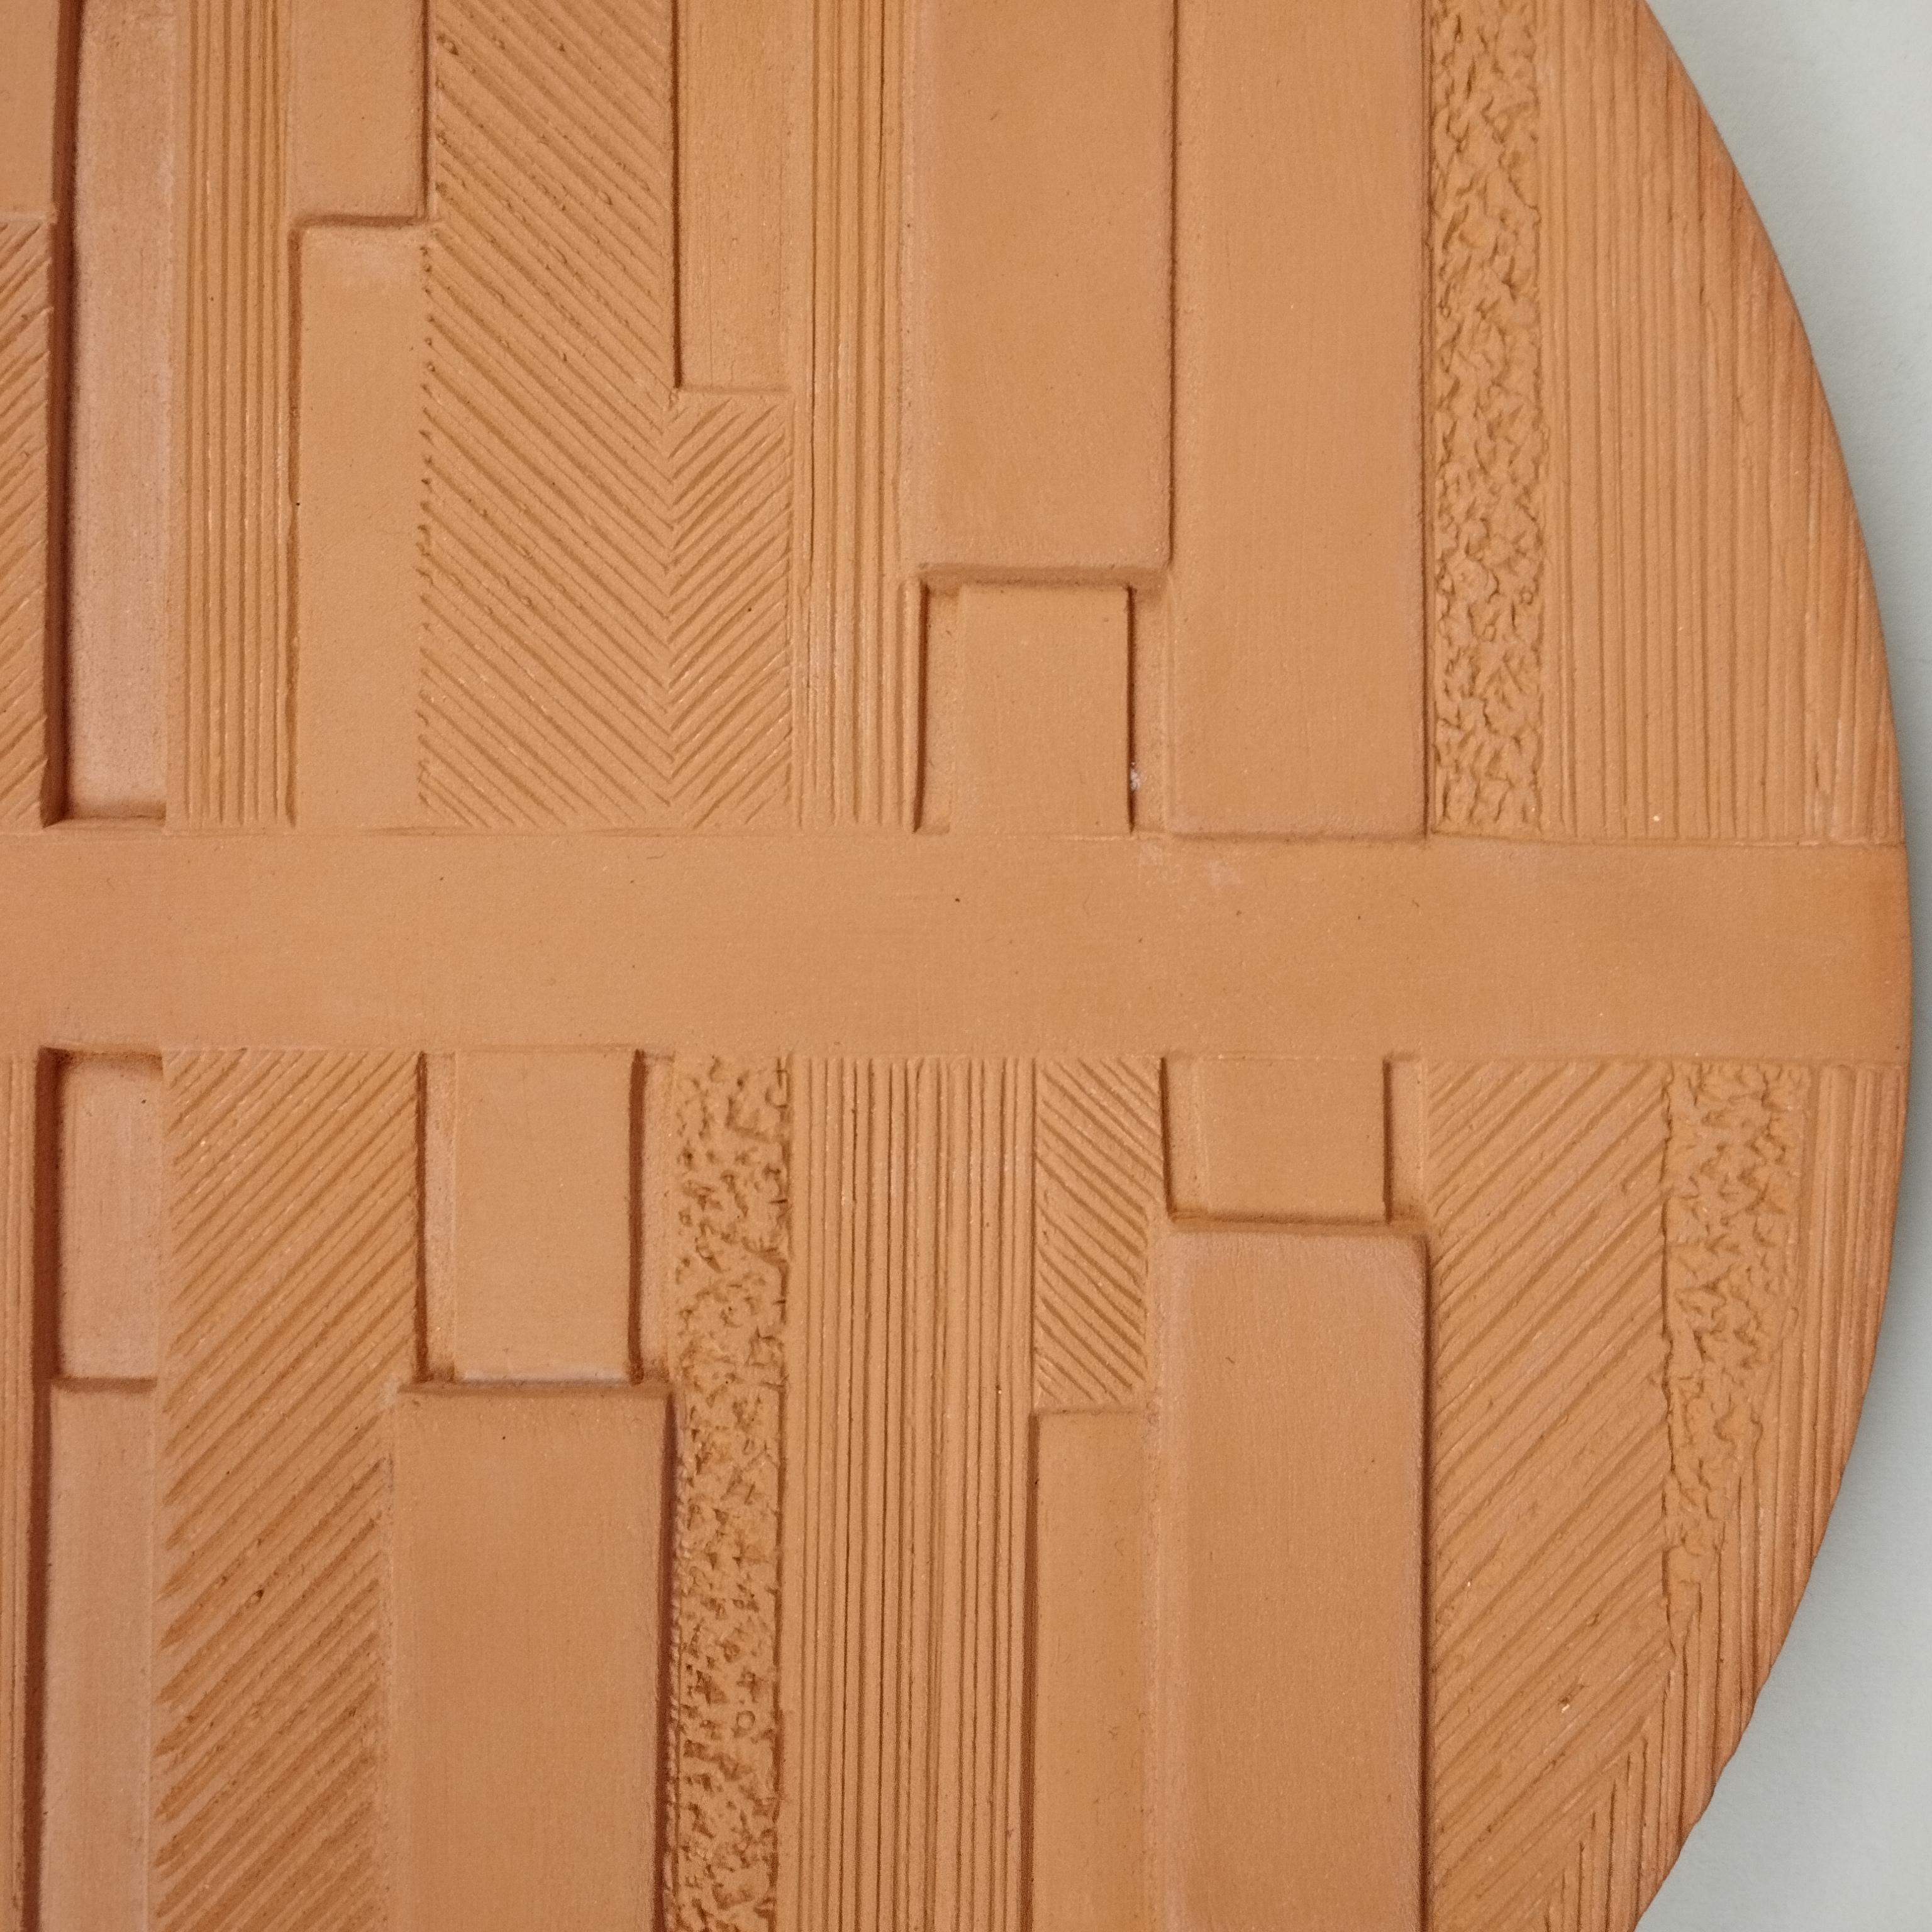 Une sculpture géométrique ovale de table en argile par TALLER Mauricio Rocha + Gabriela Carrillo. Il s'agit d'une édition de 25 ensembles fondus par Cerámica La Mejor, Mexico City, 2019.

Le panneau en relief en céramique qu'ils ont créé pour